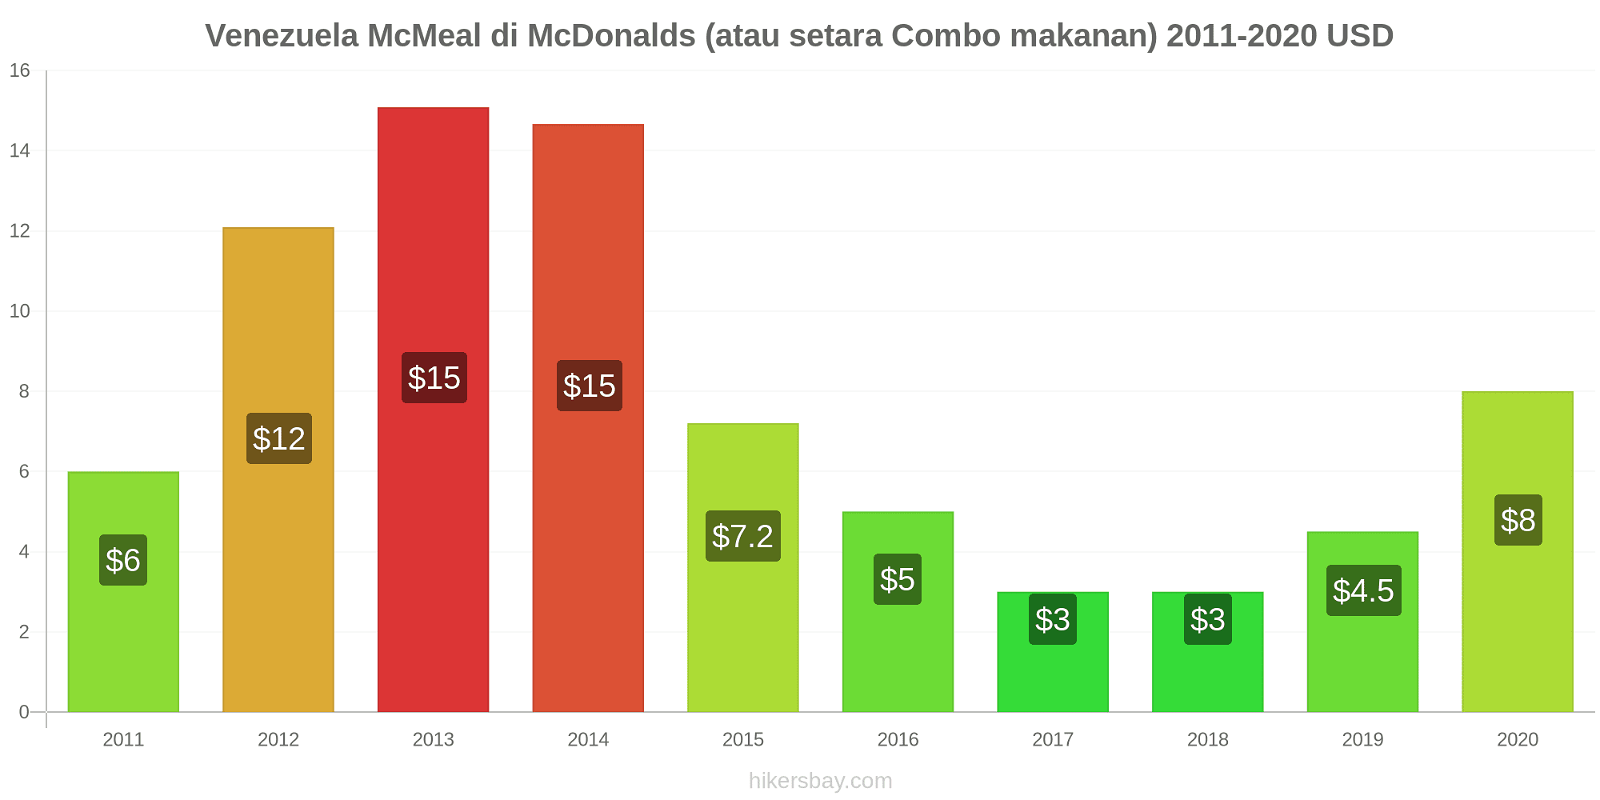 Venezuela perubahan harga McMeal di McDonalds (atau setara Combo makanan) hikersbay.com